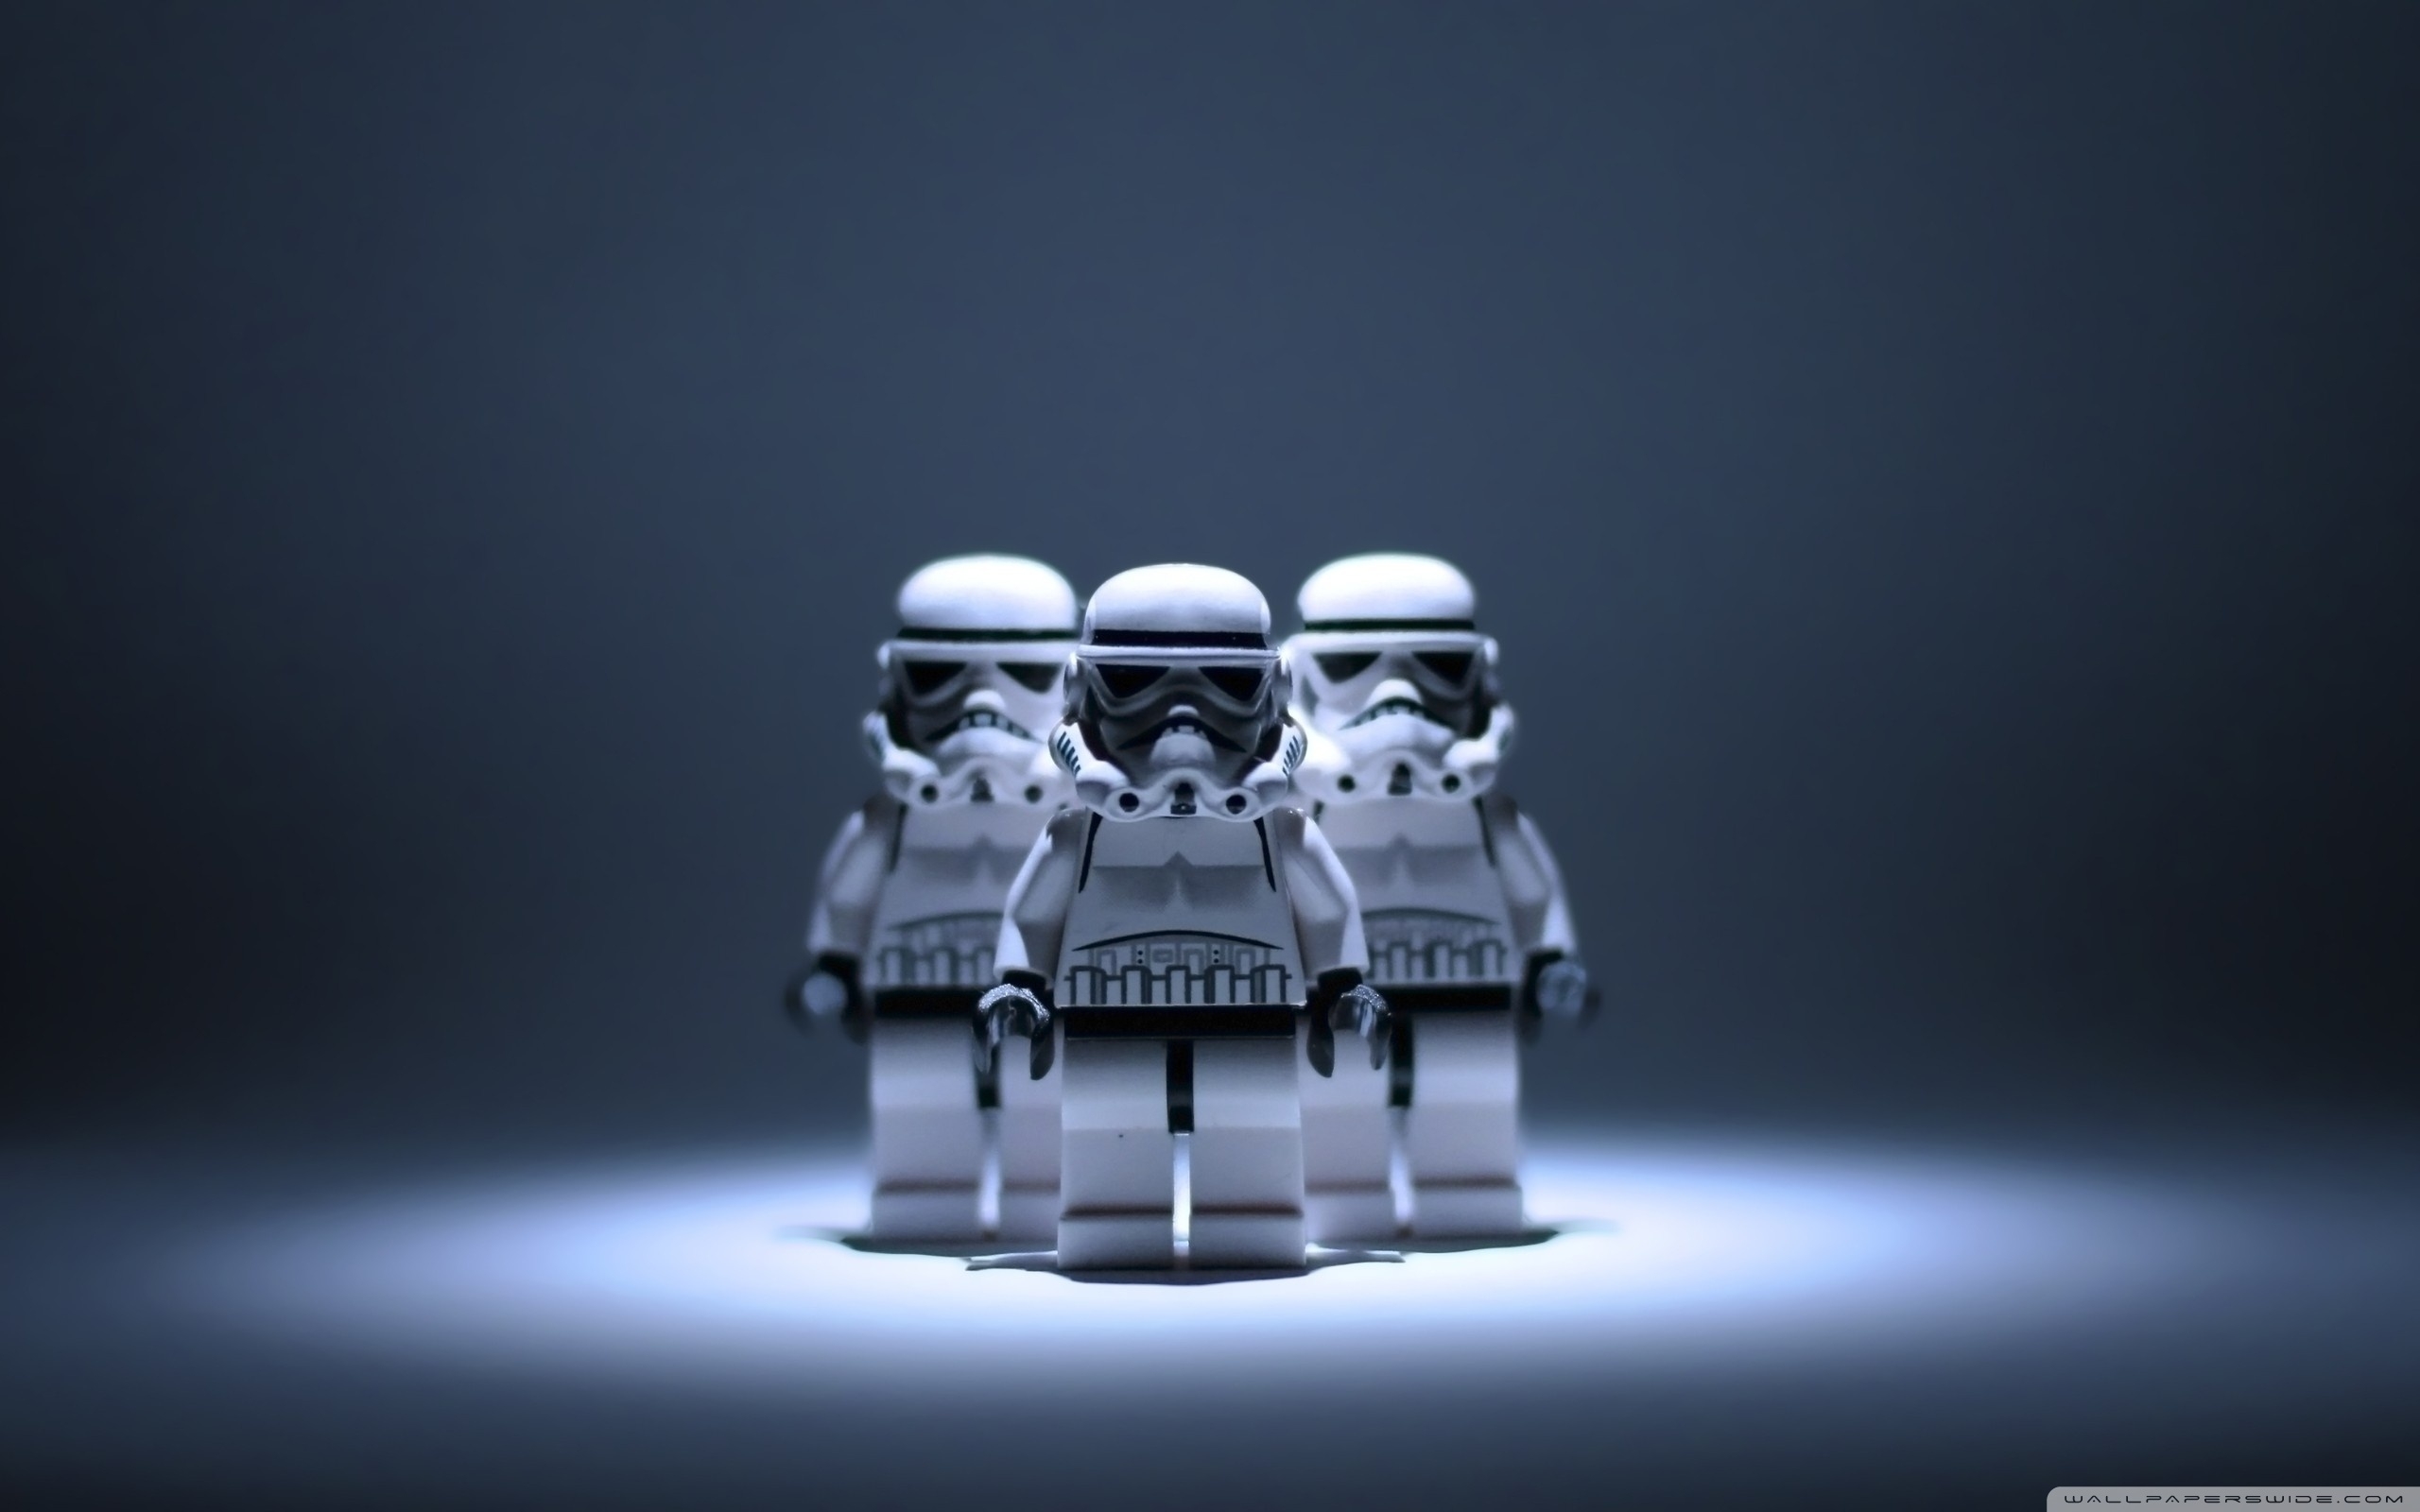 star wars lego stormtrooper ❤ 4k hd desktop wallpaper for 4k ultra